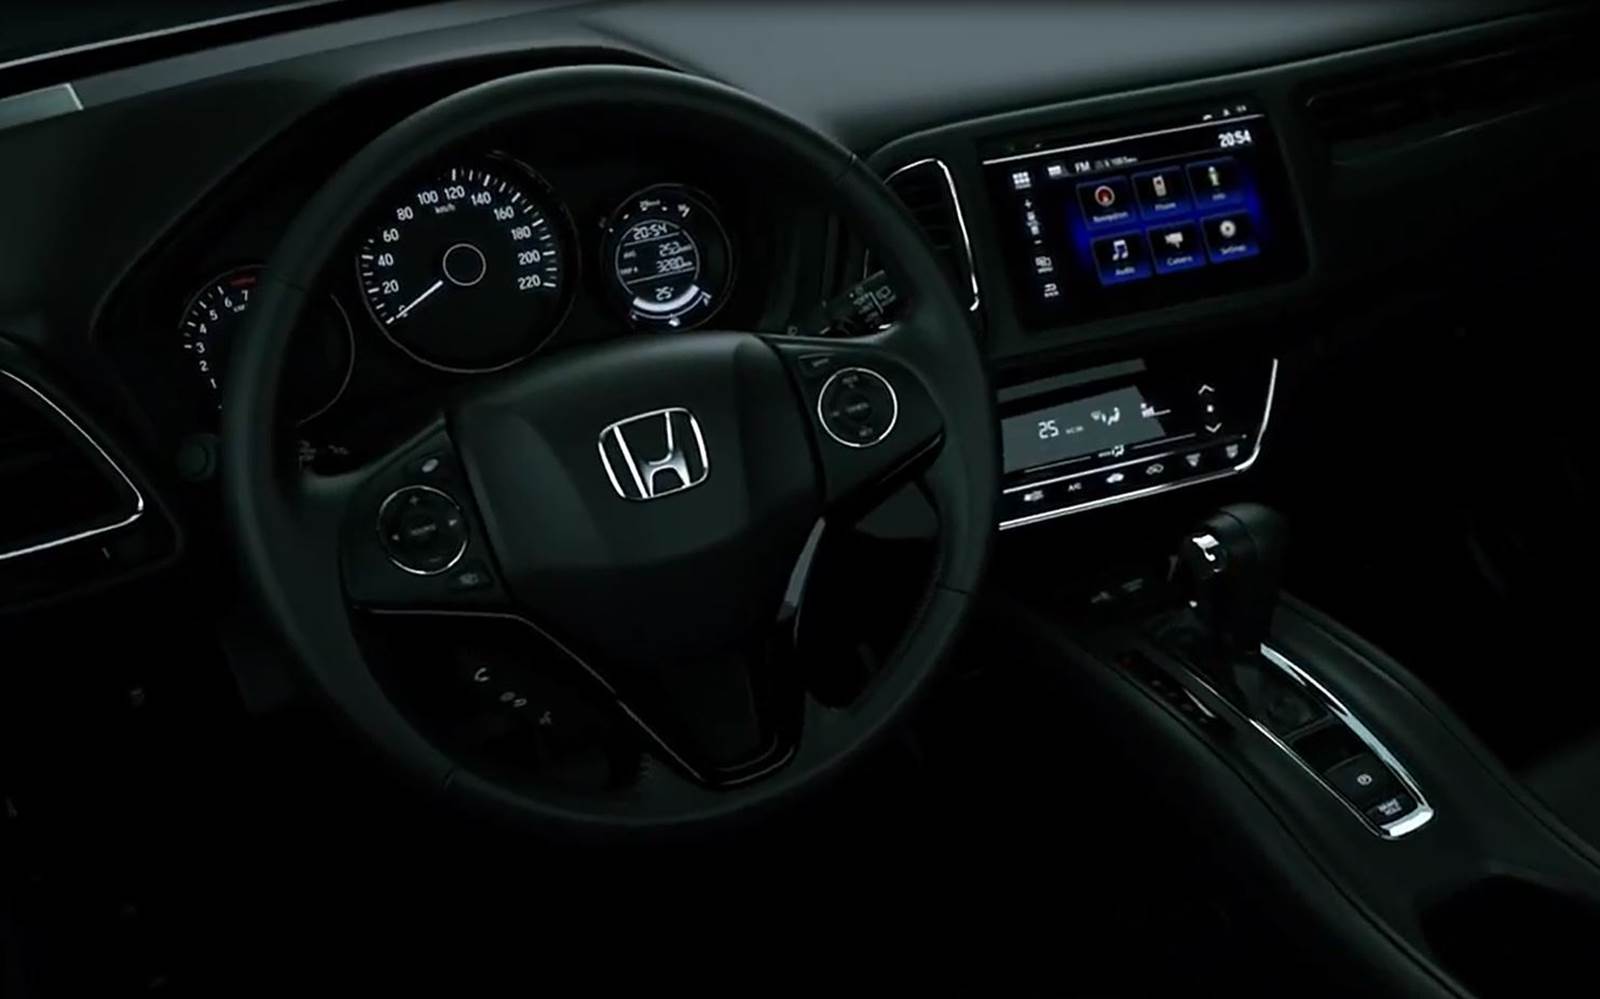 Honda HR-V 2015 - concorrente do EcoSport